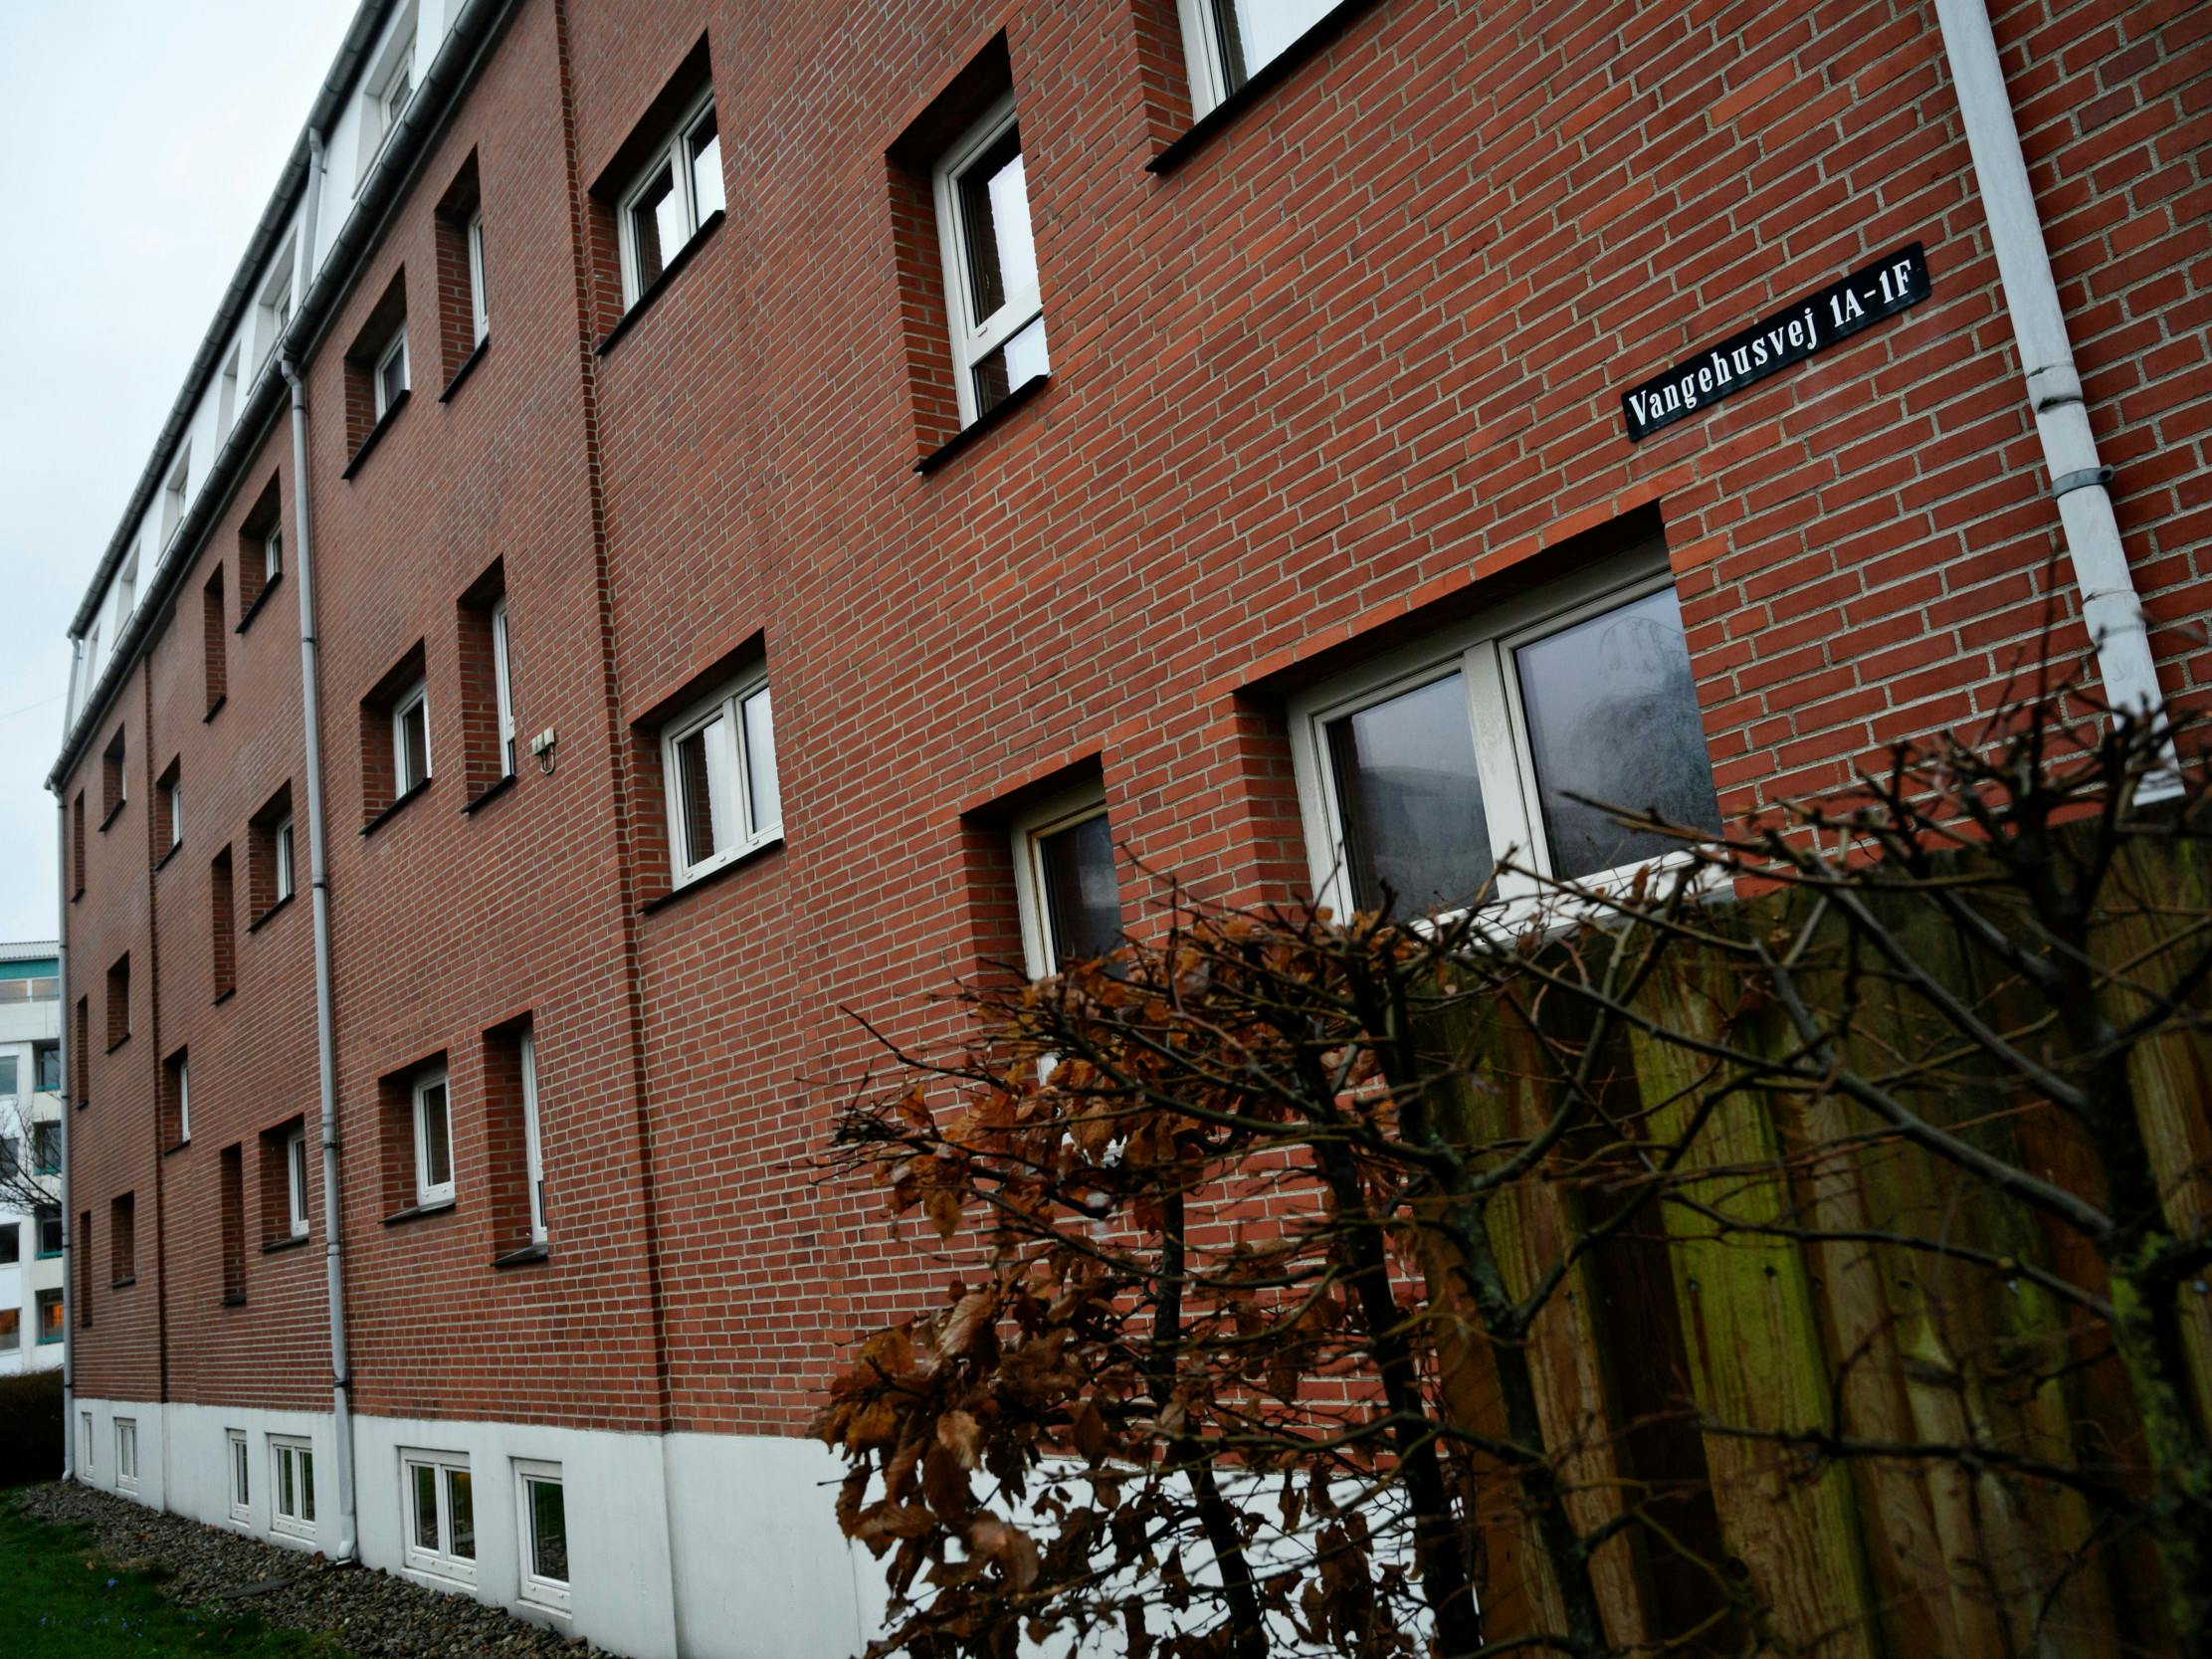 Det var i denne ejendom på Østerbro i København, at tre ældre borgere blev myrdet i 2019.